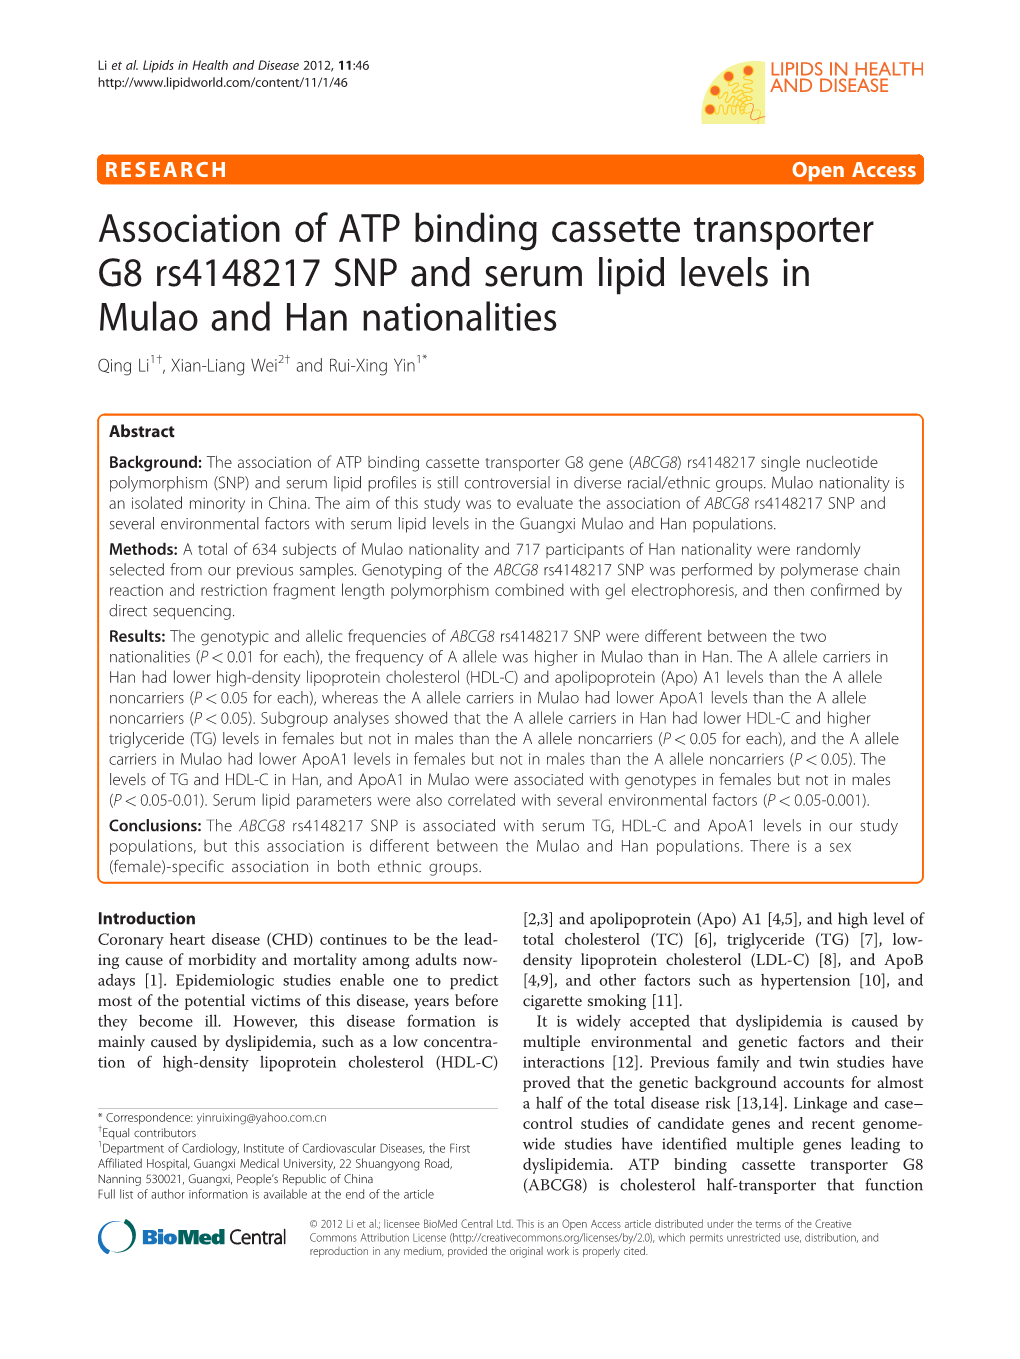 Association of ATP Binding Cassette Transporter G8 Rs4148217 SNP and Serum Lipid Levels in Mulao and Han Nationalities Qing Li1†, Xian-Liang Wei2† and Rui-Xing Yin1*